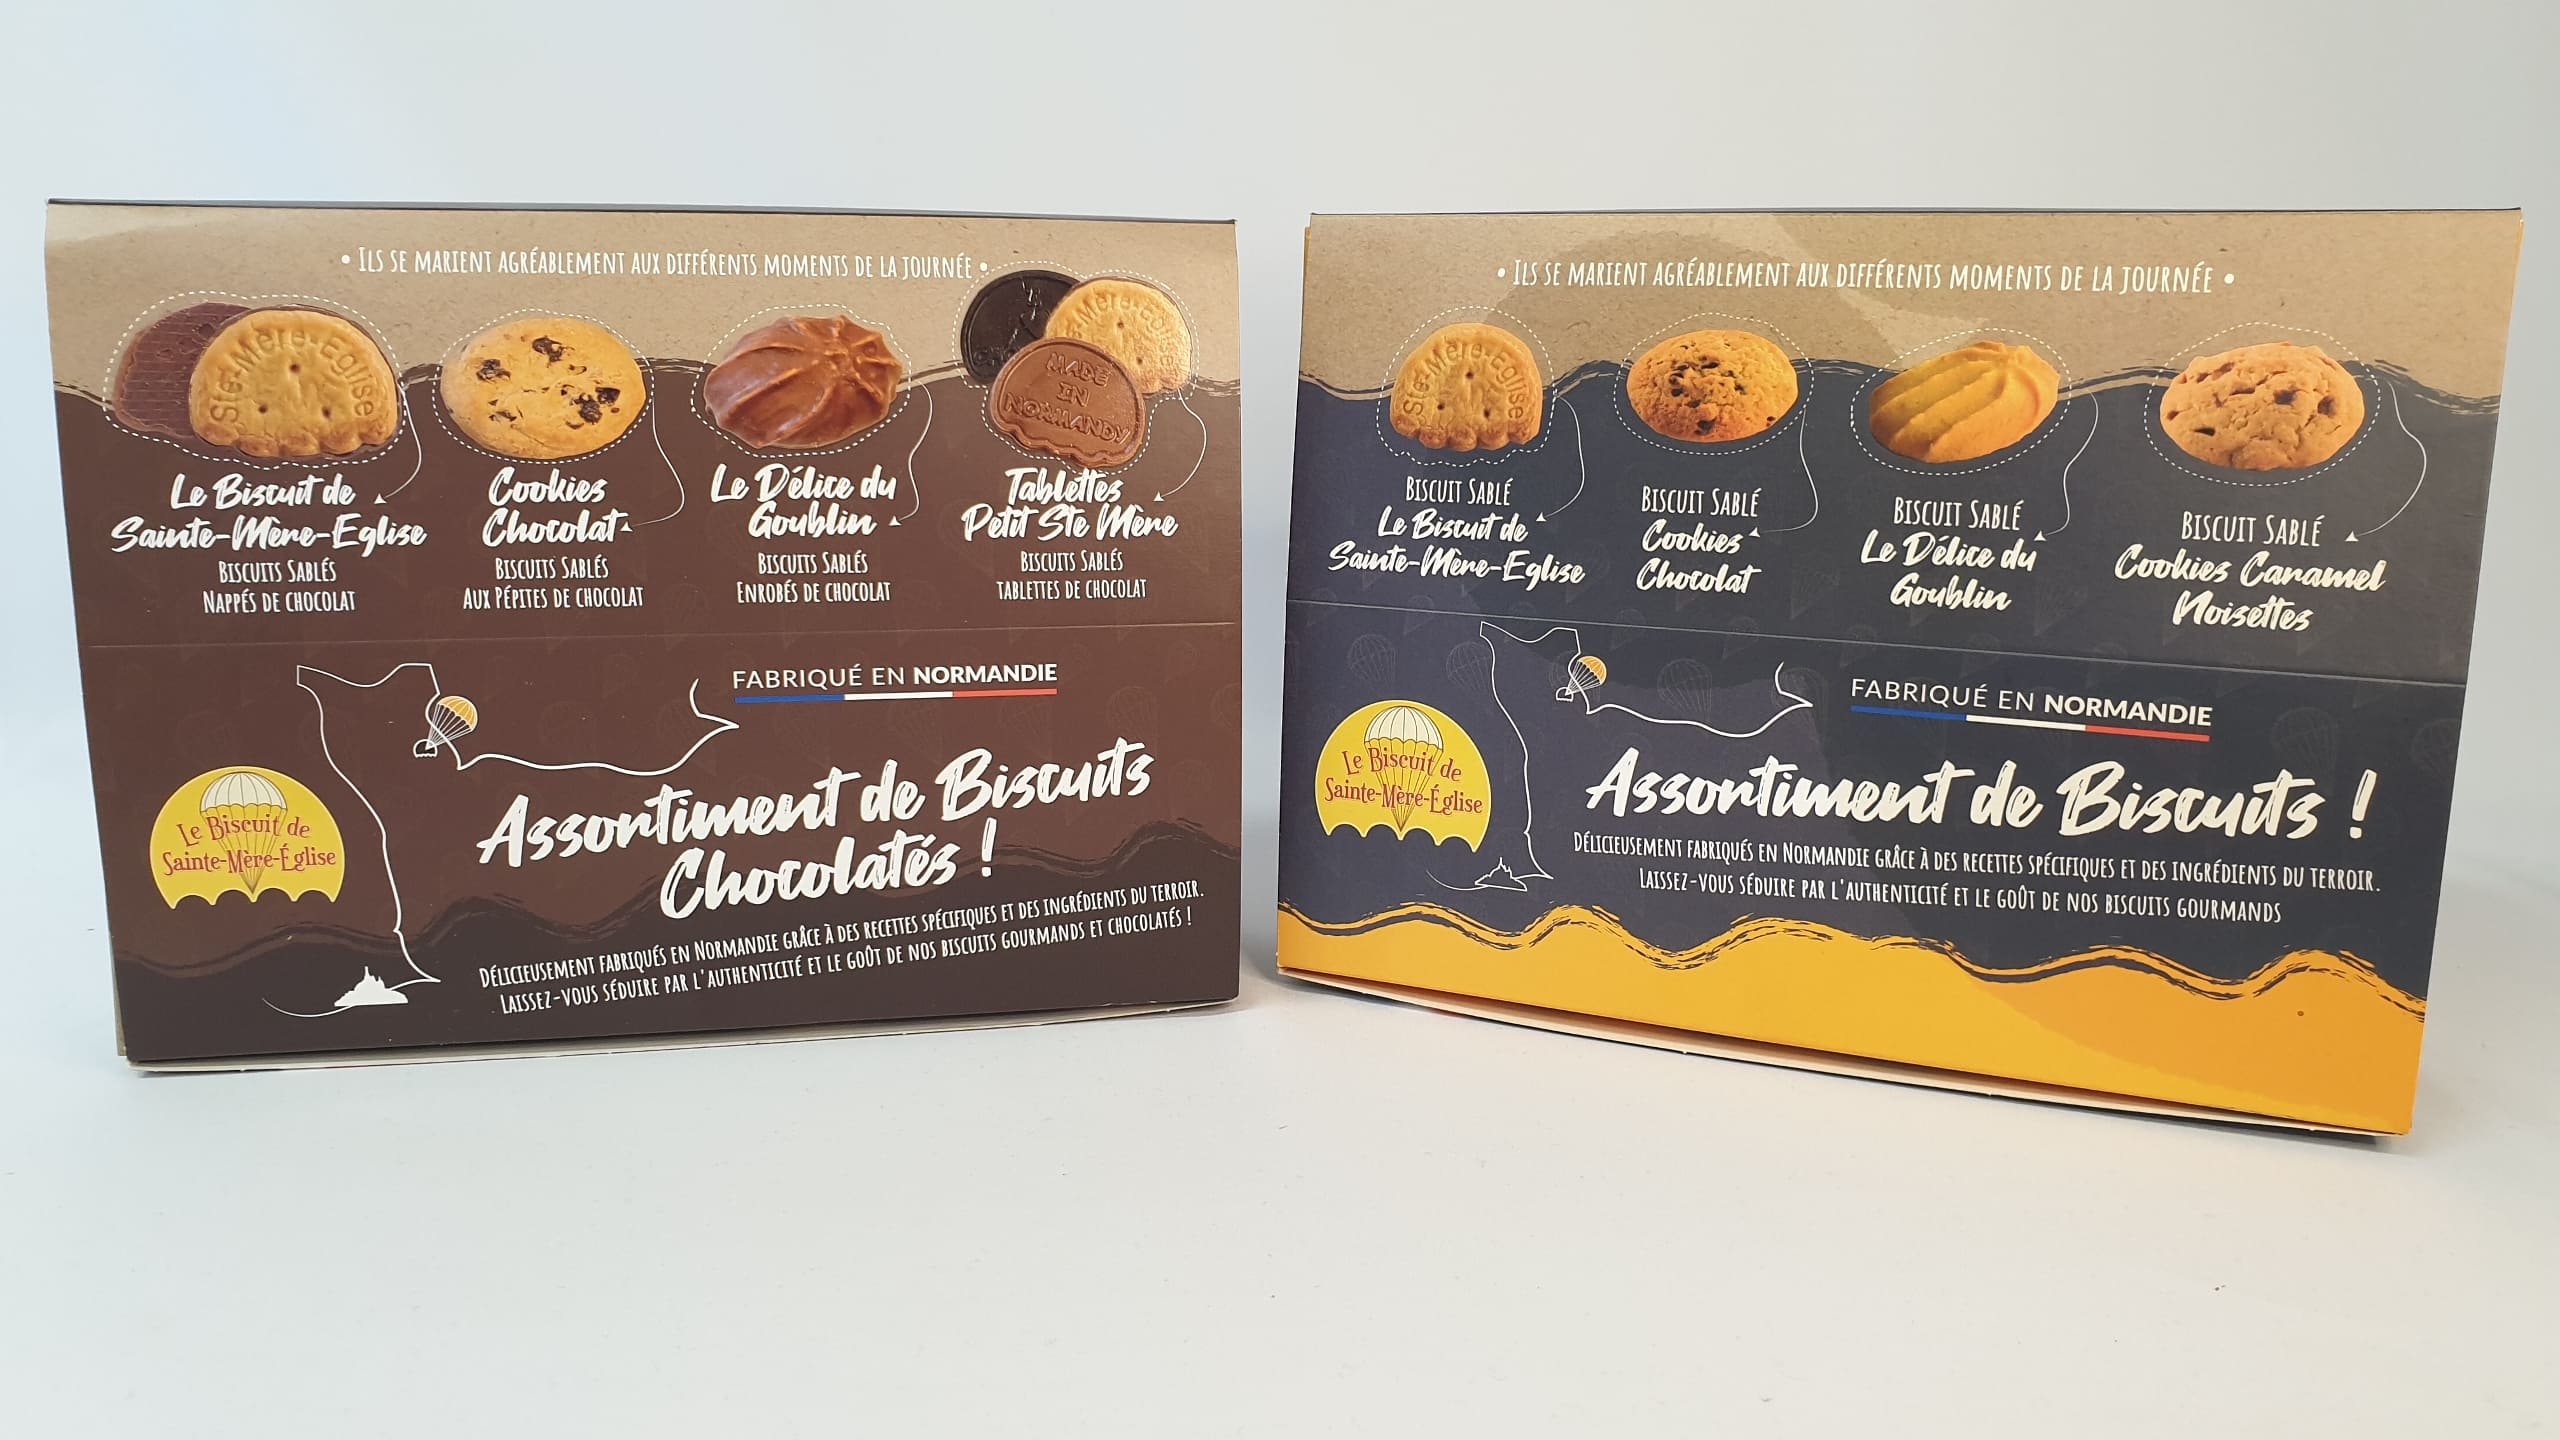 Mes Premiers Biscuits Chocolatés - Lot x3